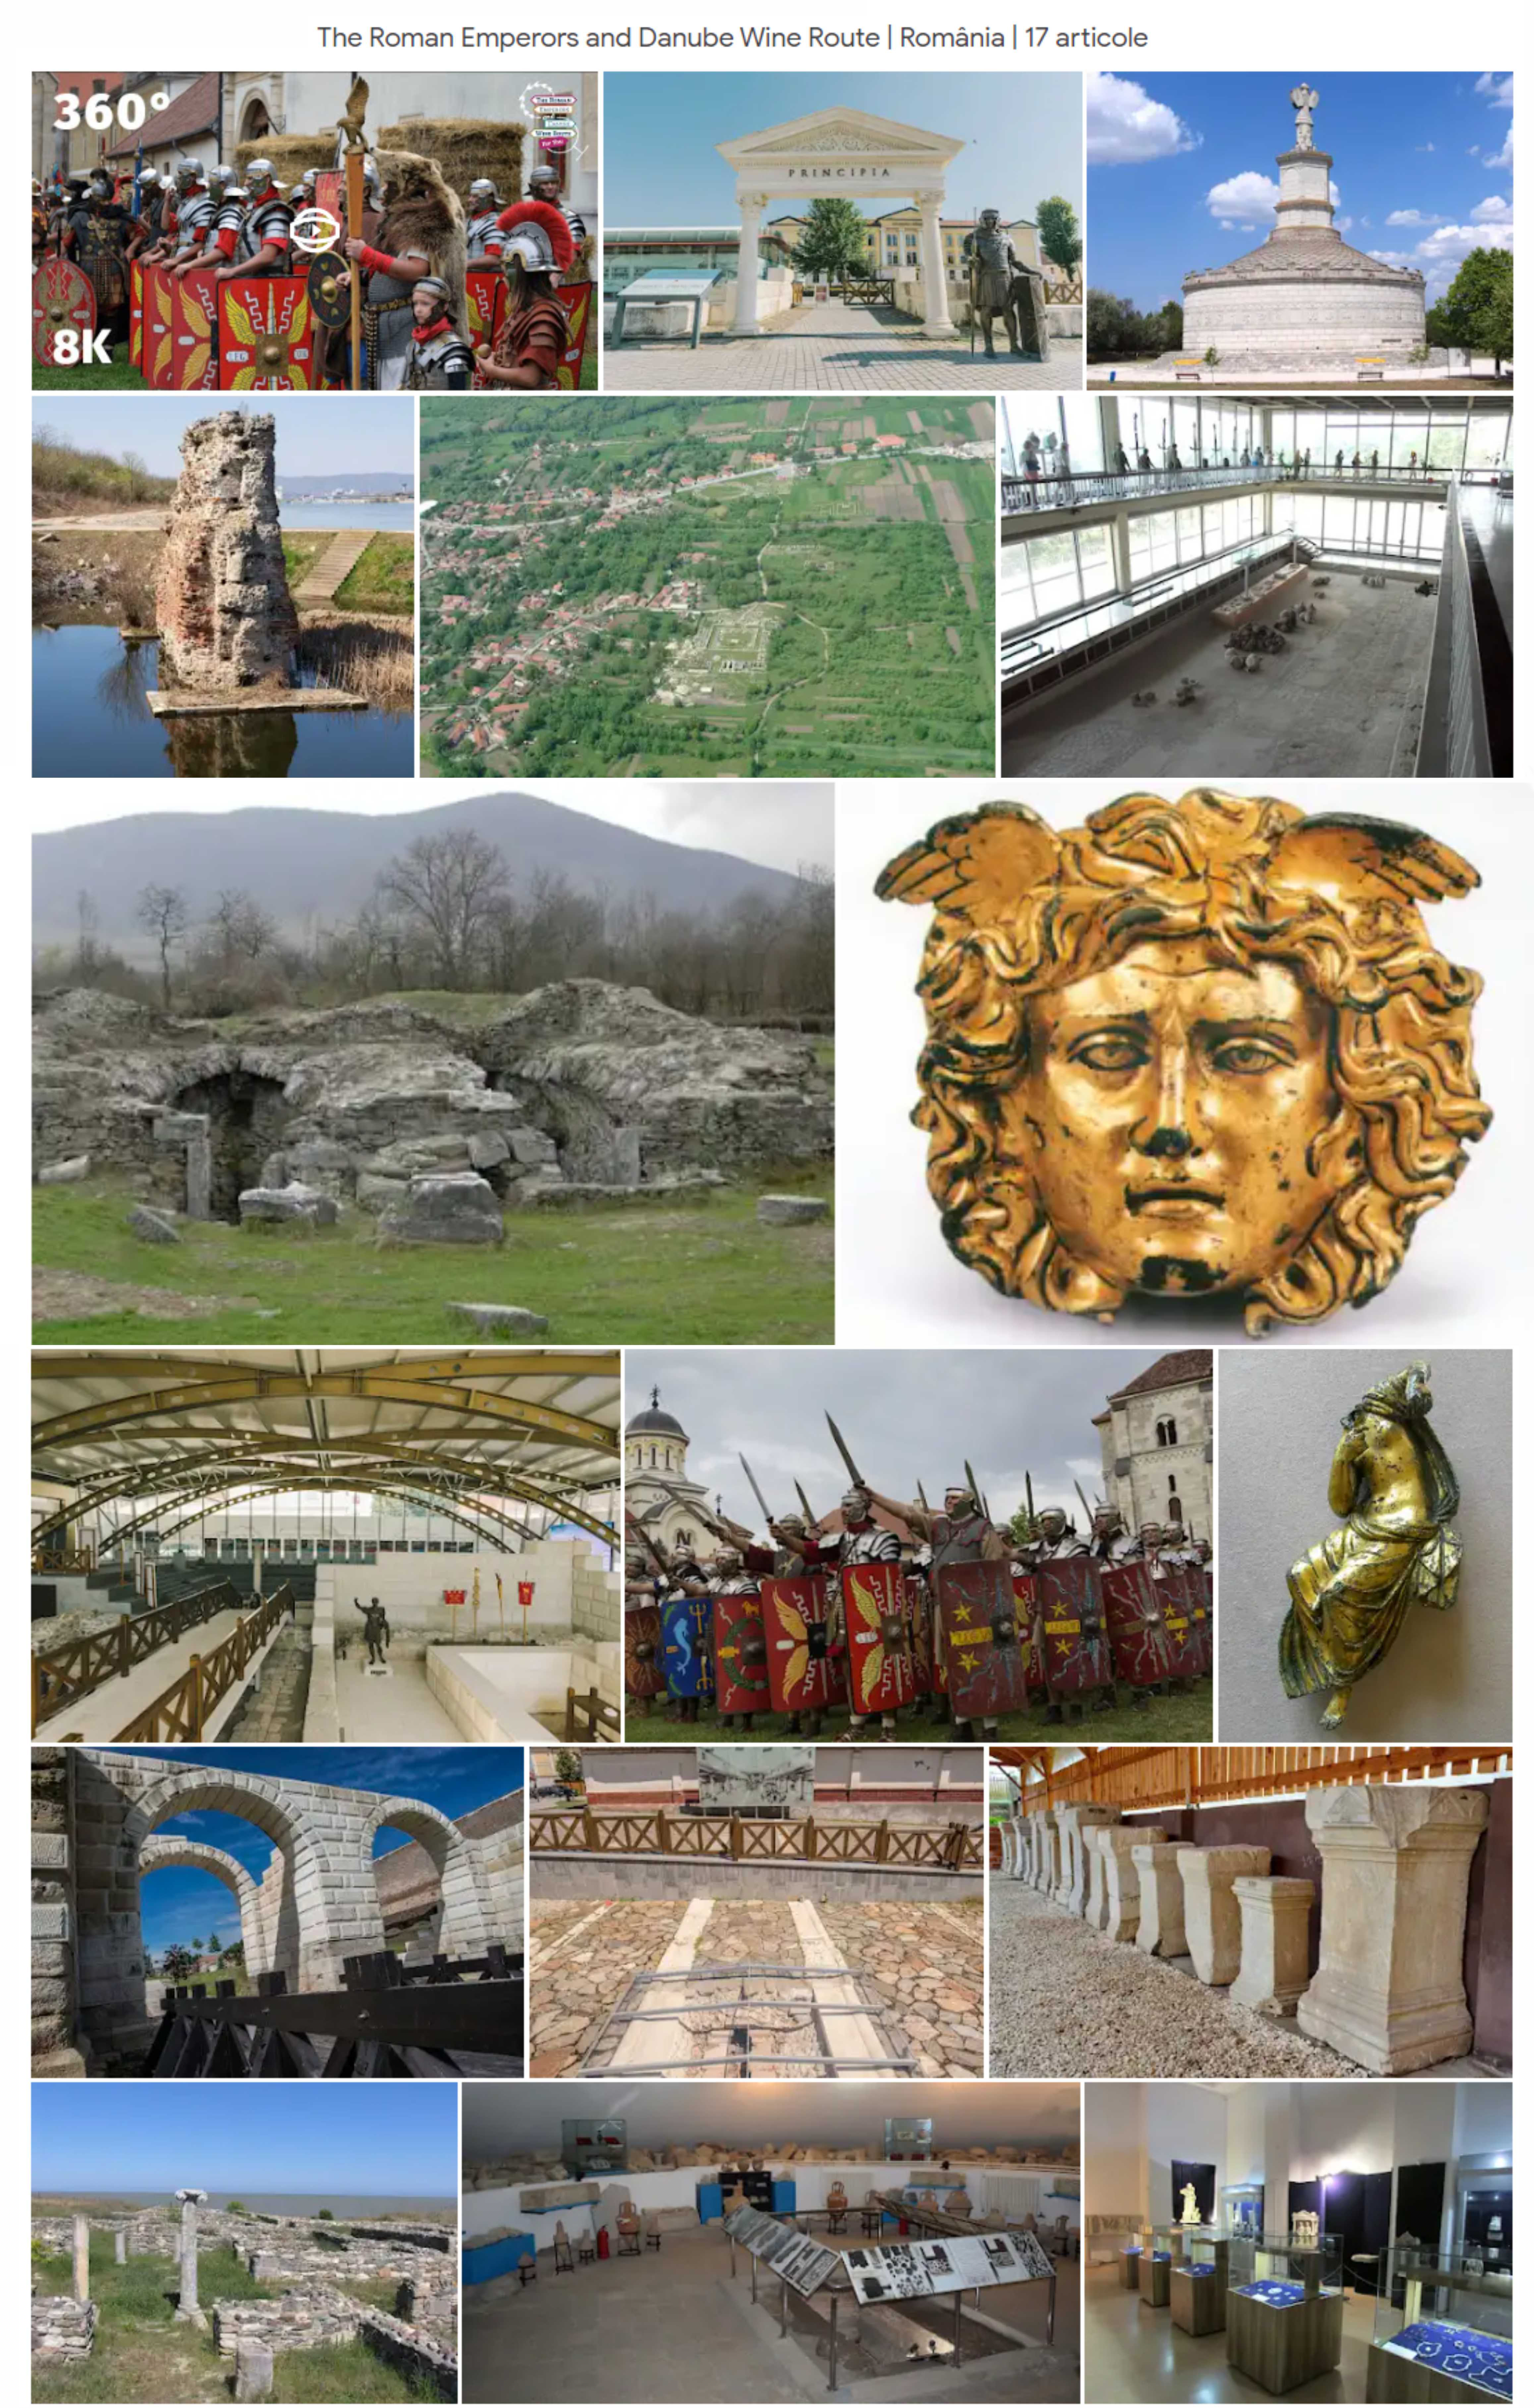 Google Arts & Culture: Ruta Împăraților Romani - Ulpia Traiana Sarmizegetusa